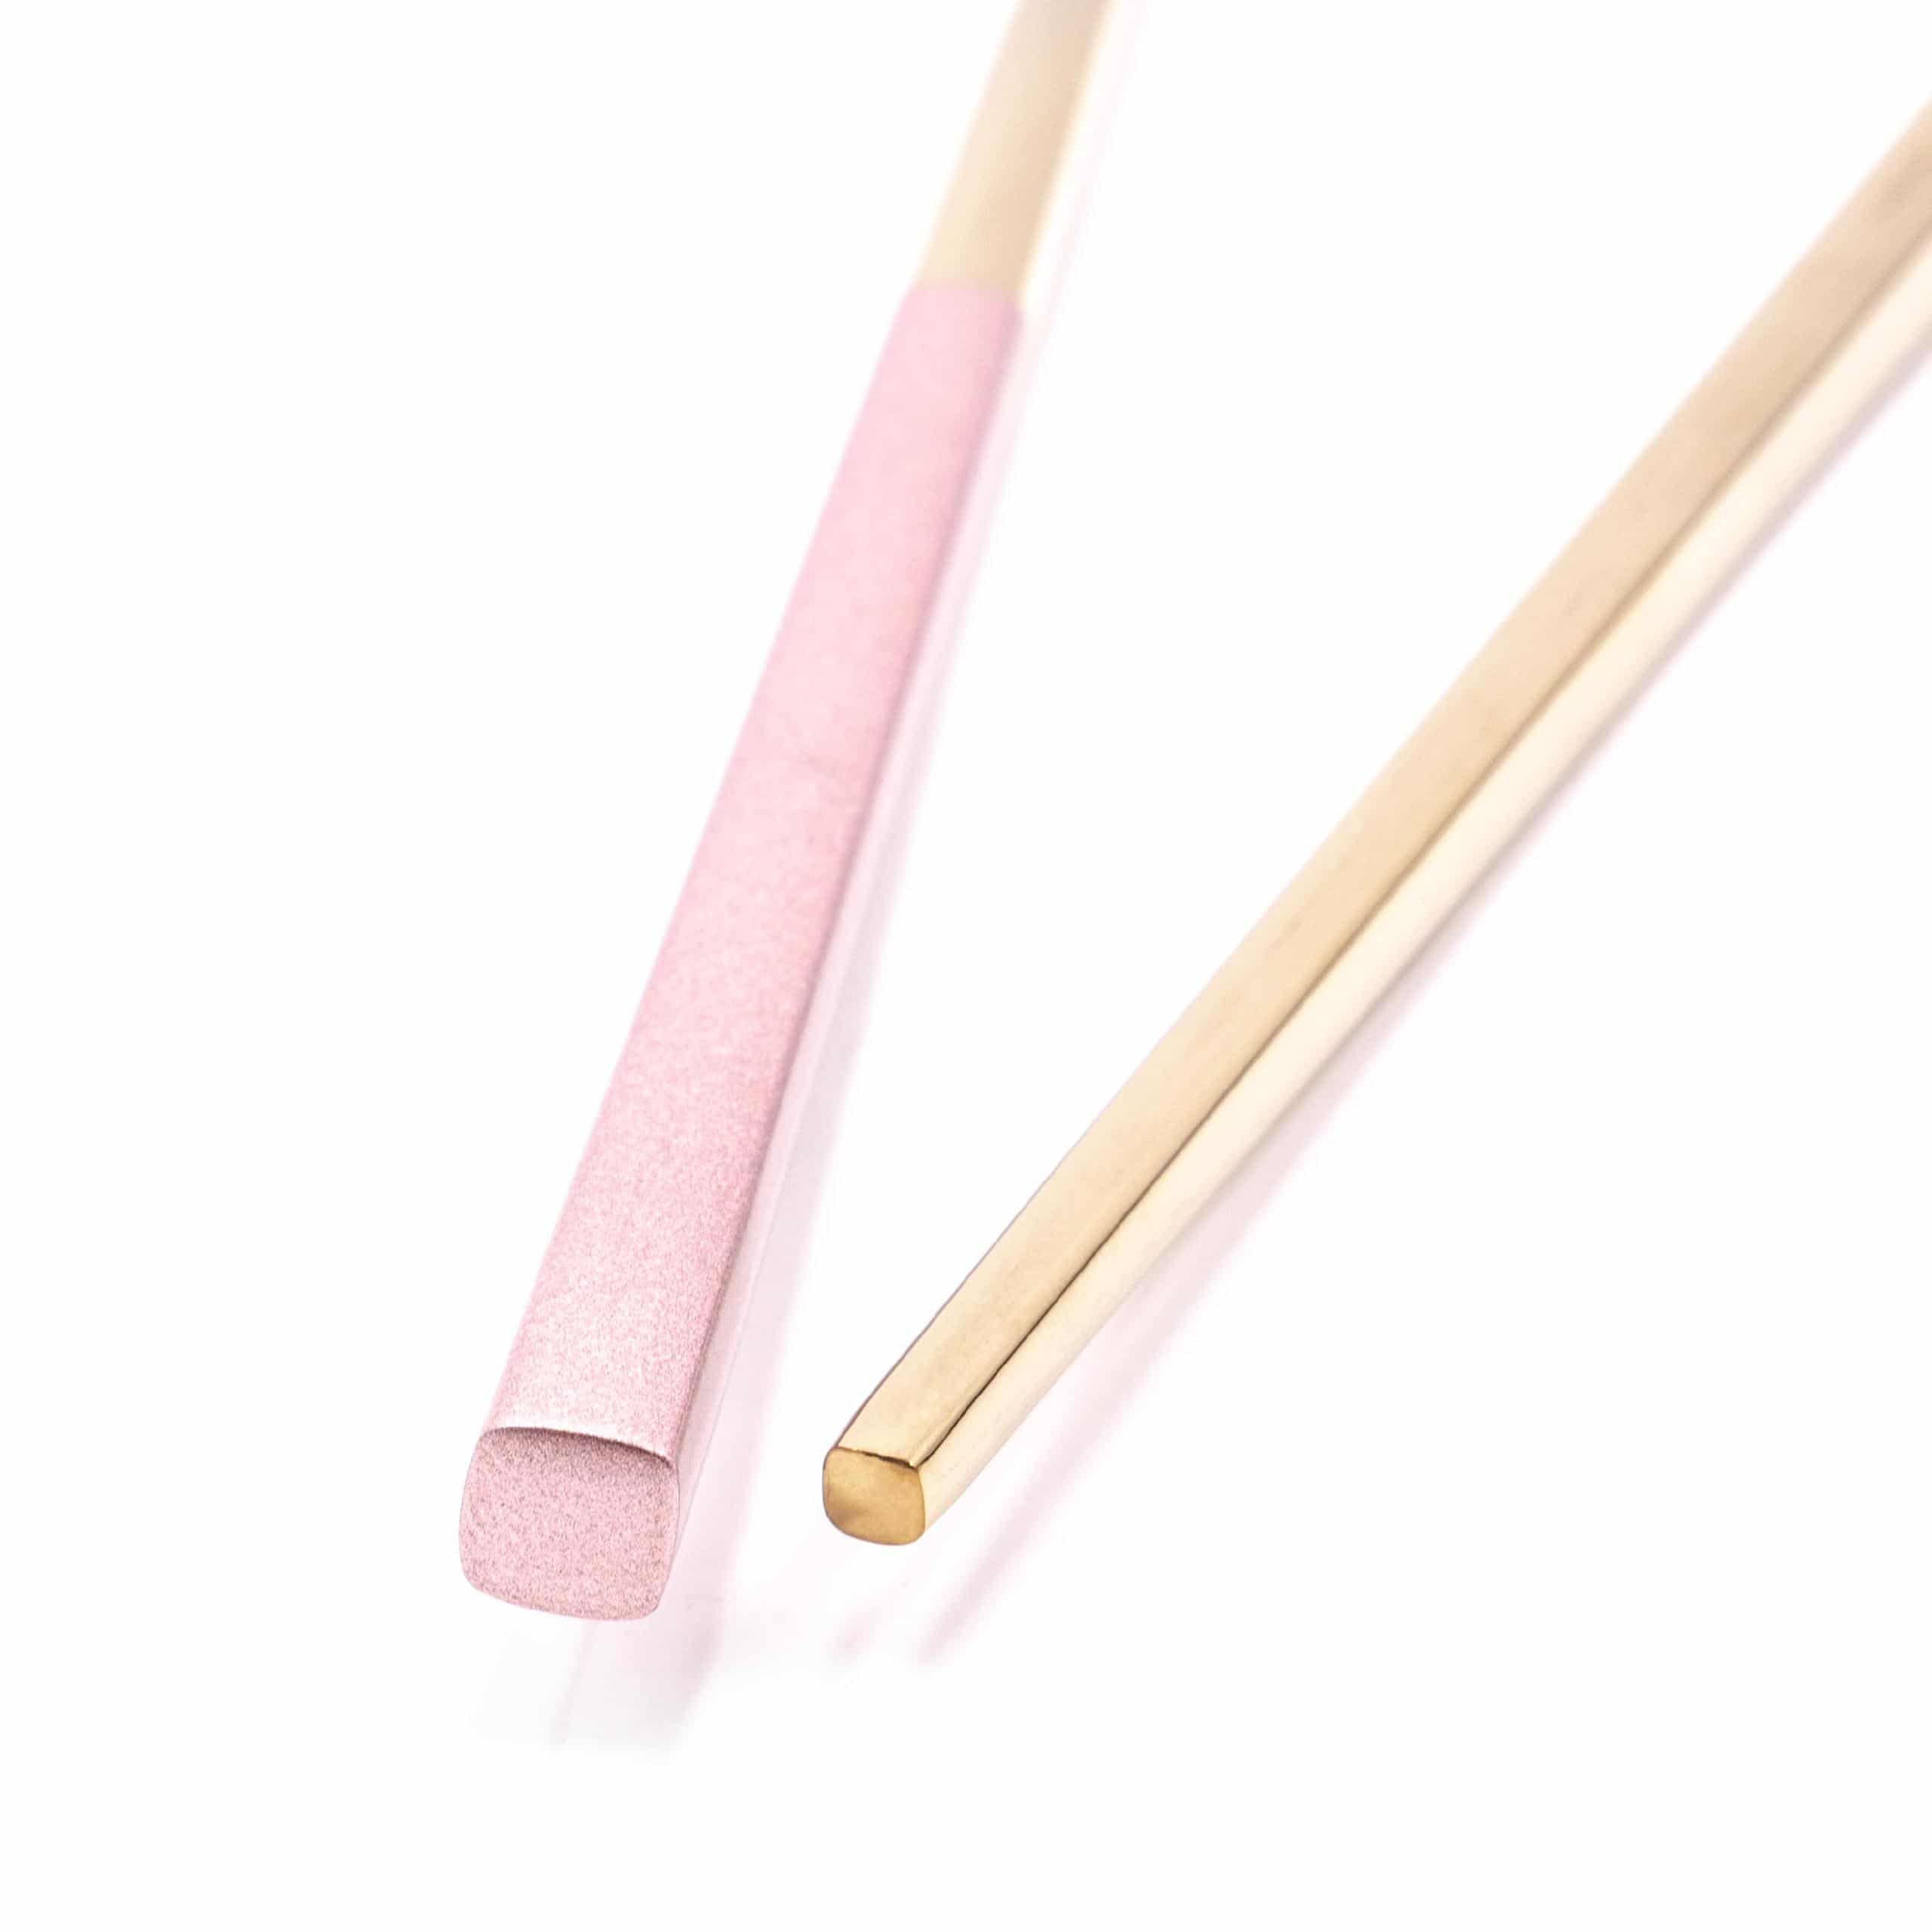 Pałeczki do jedzenia sushi (1 para) - 23 cm, stal nierdzewna, złoty, różowy